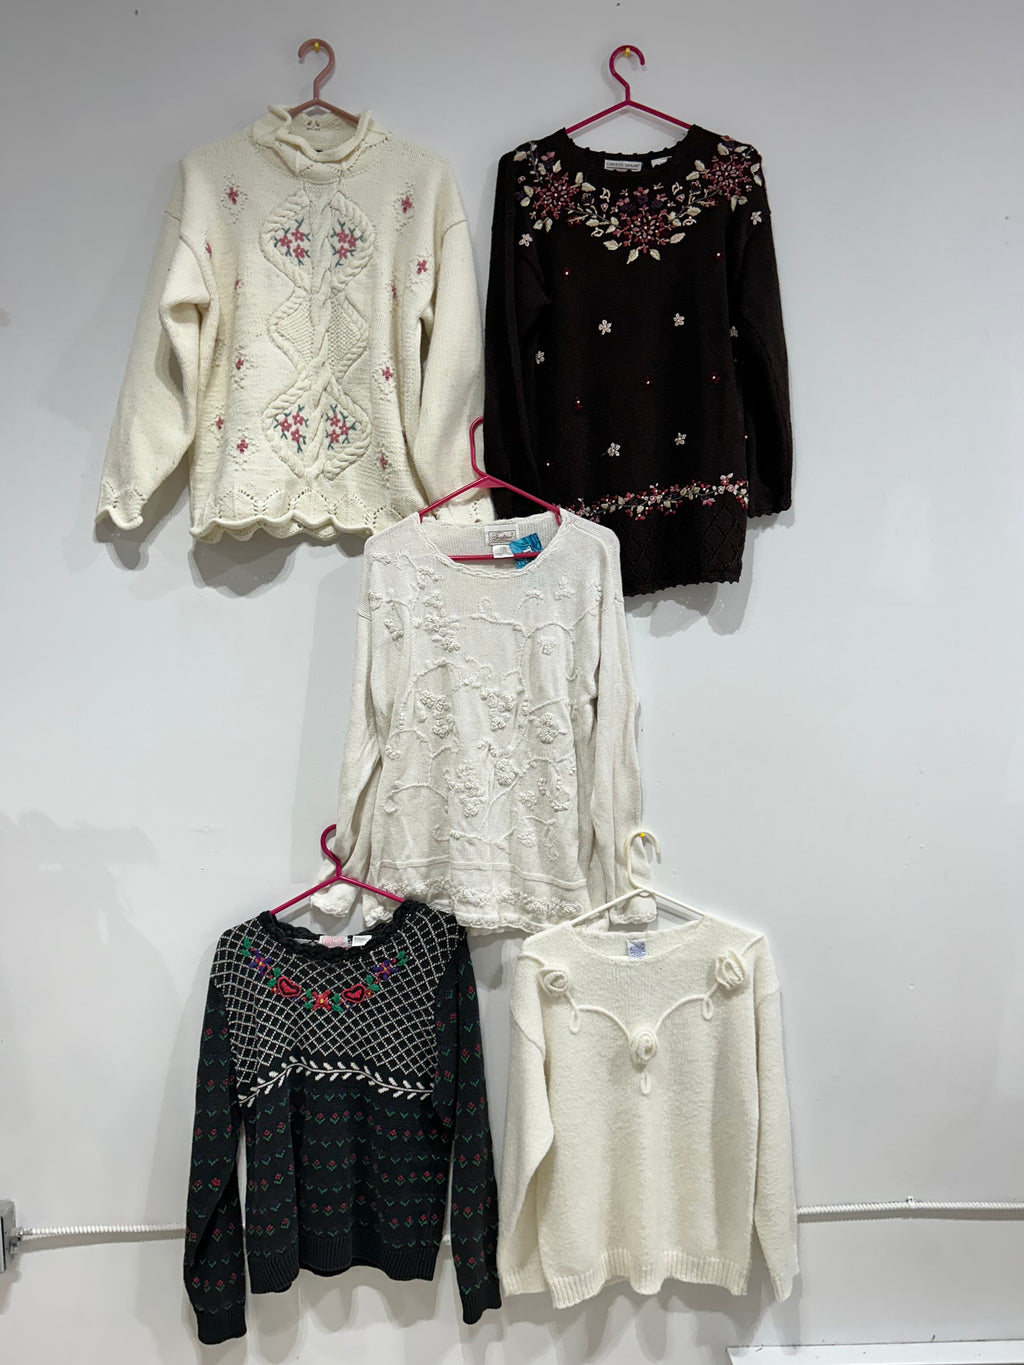 Chandails & tricots vintage & pré-aimés partie 2